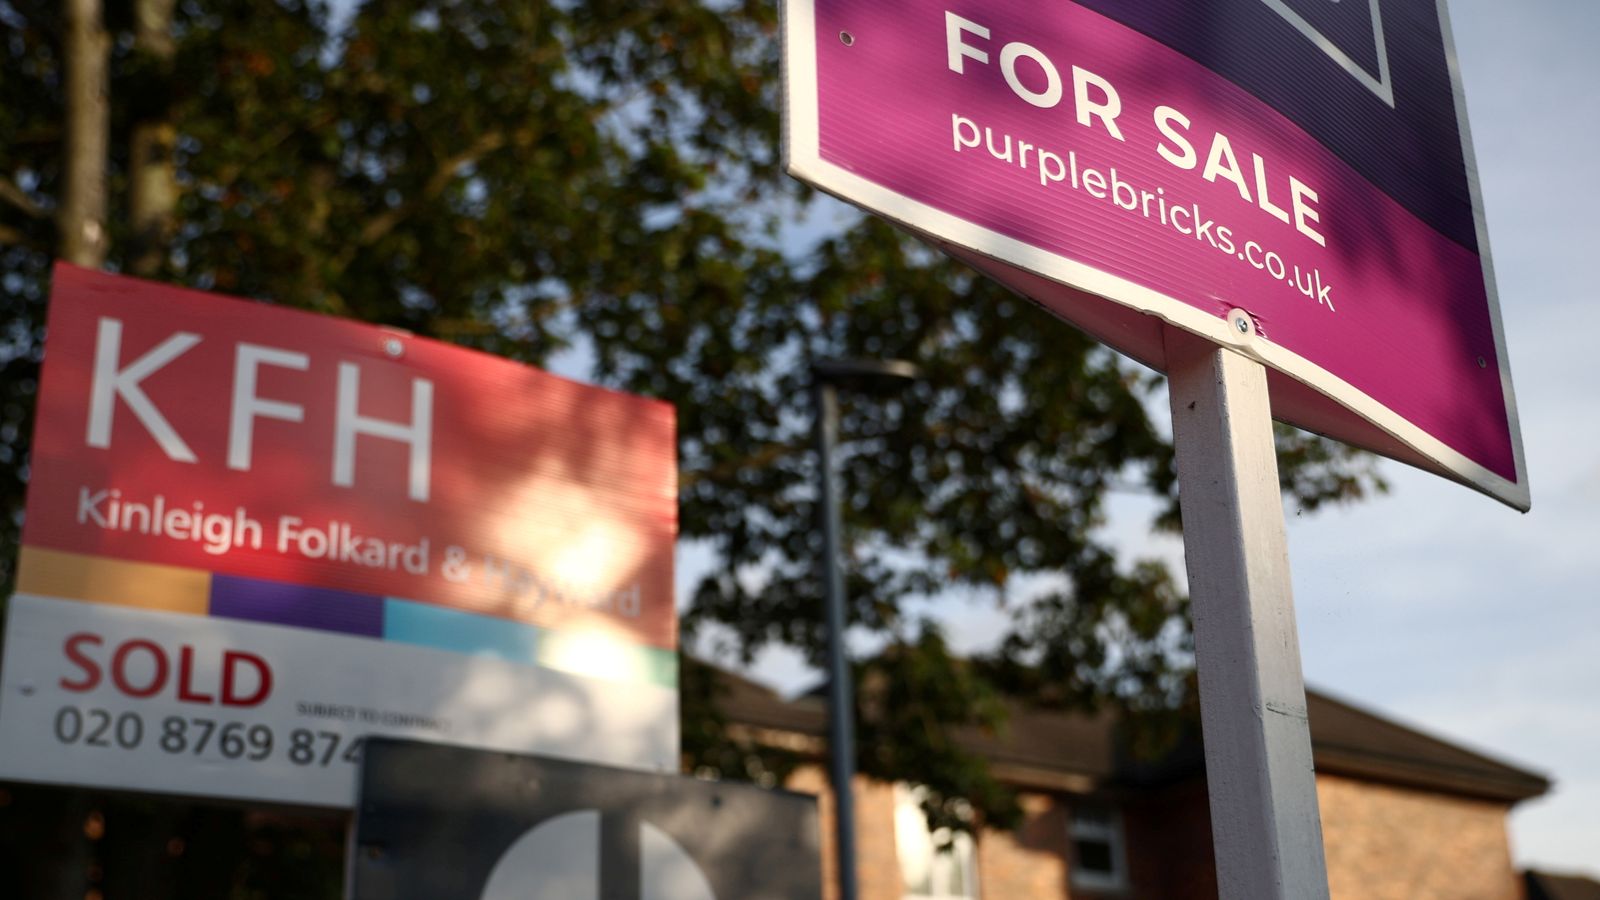 Les emprunts hypothécaires chutent de 36 % alors que le marché du logement commence à se refroidir |  Actualité économique